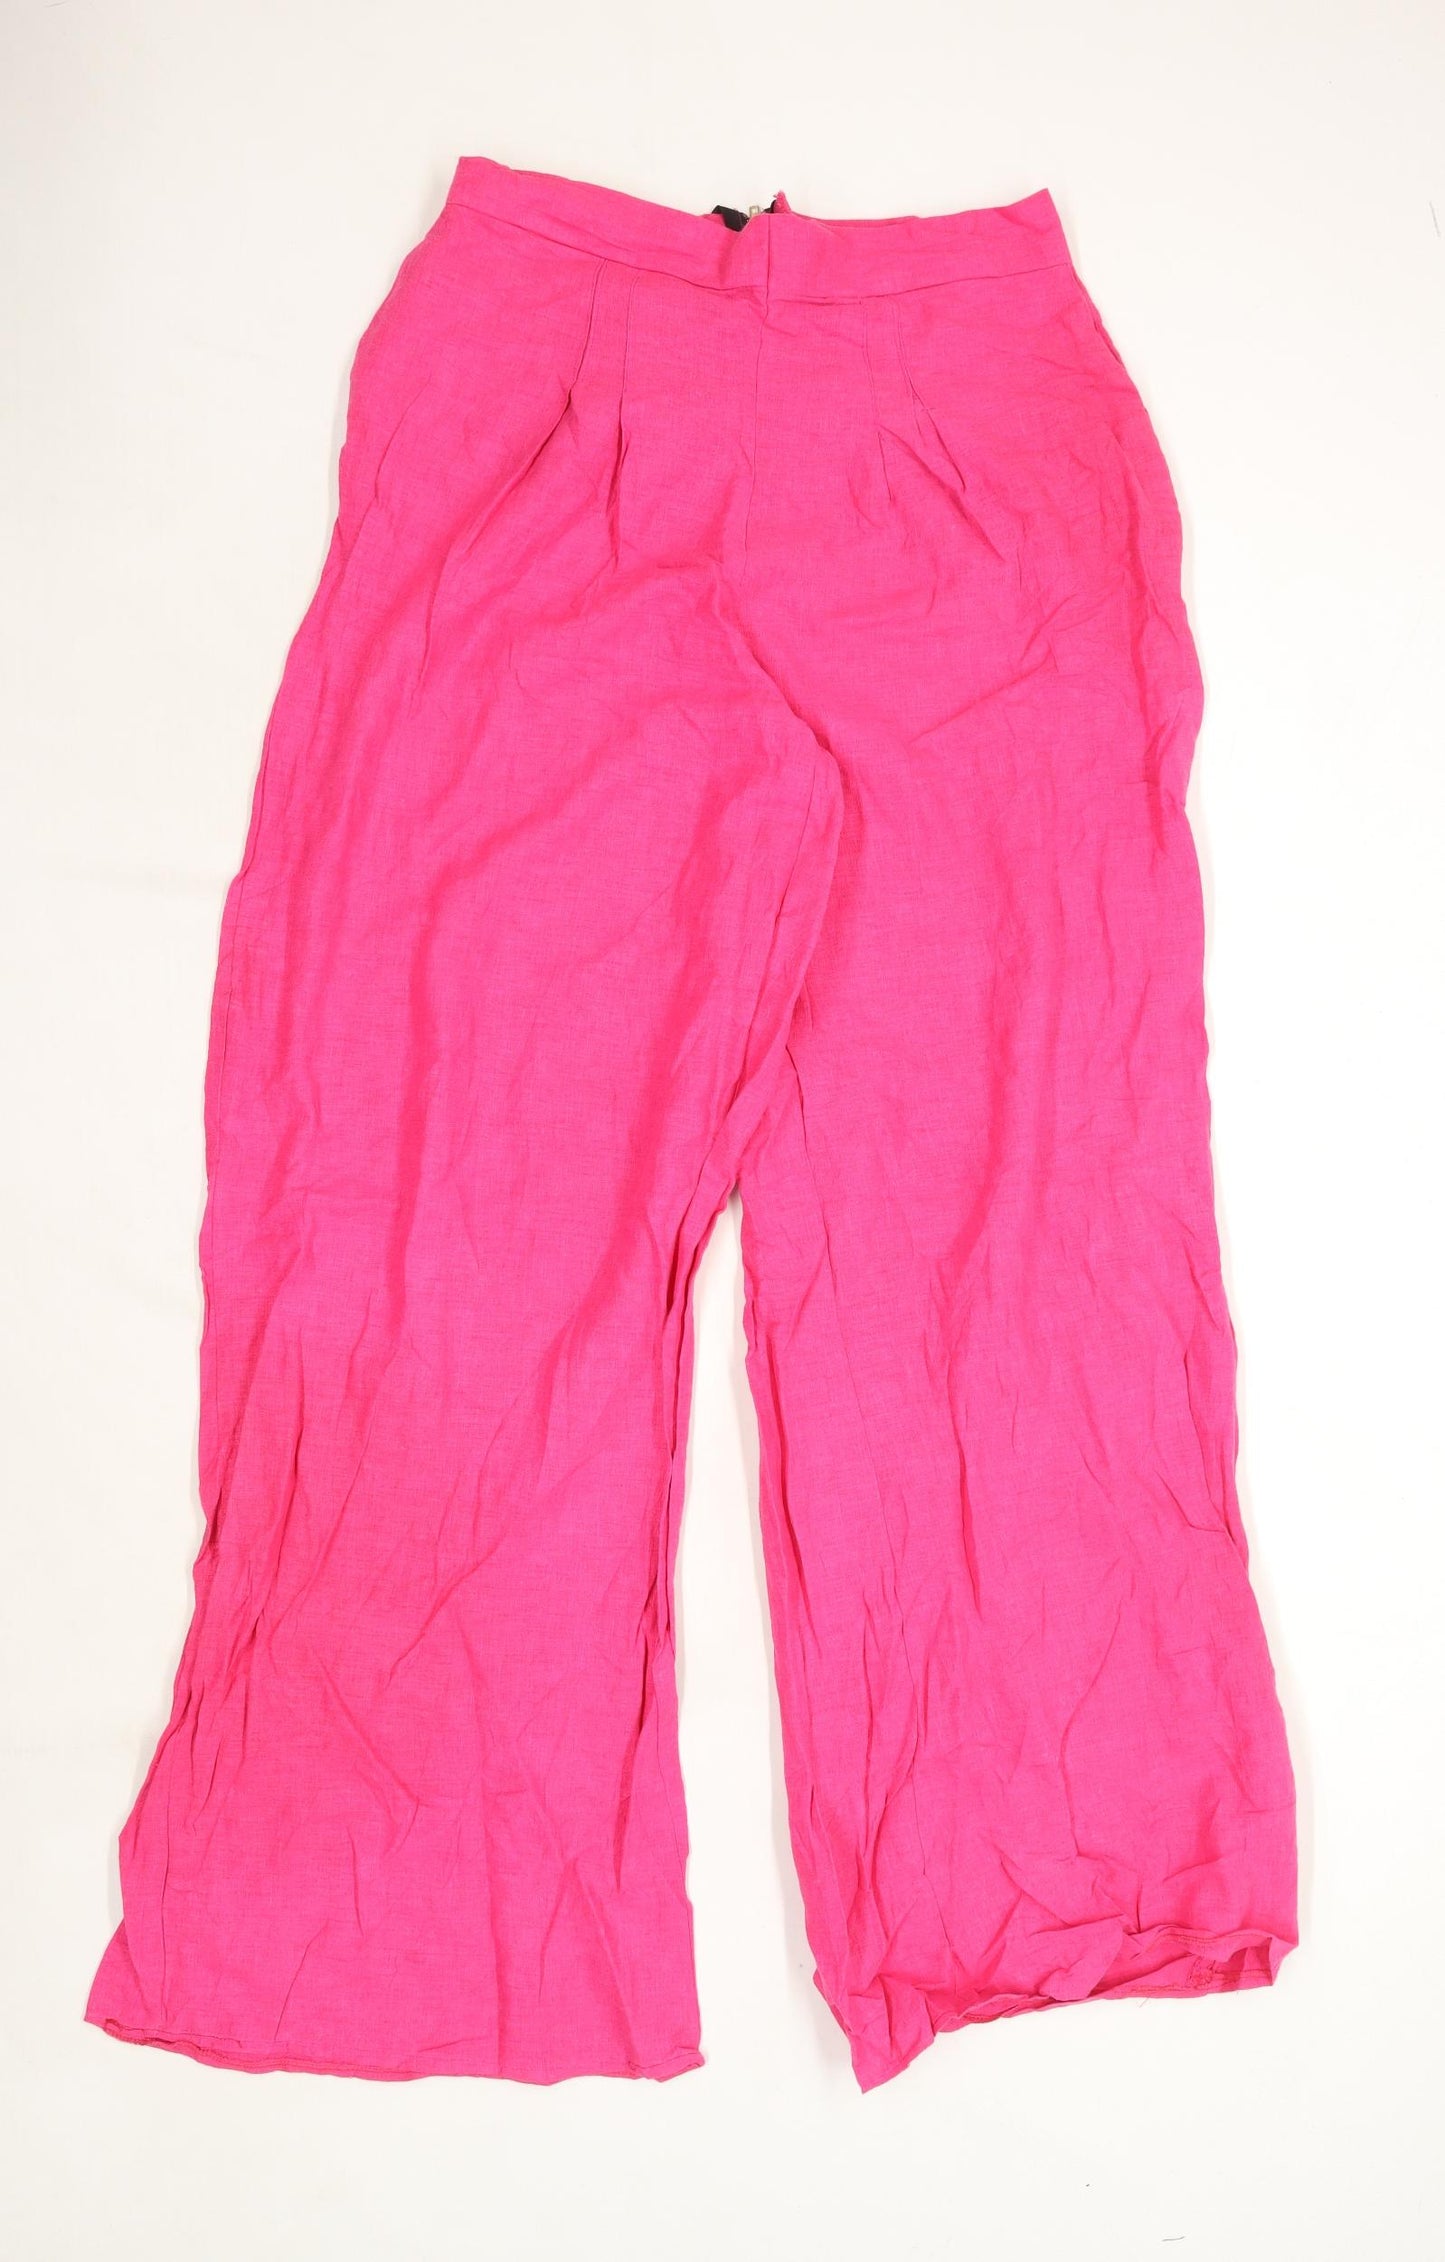 Womens Preworn Pink Linen Trousers Size W28/L30